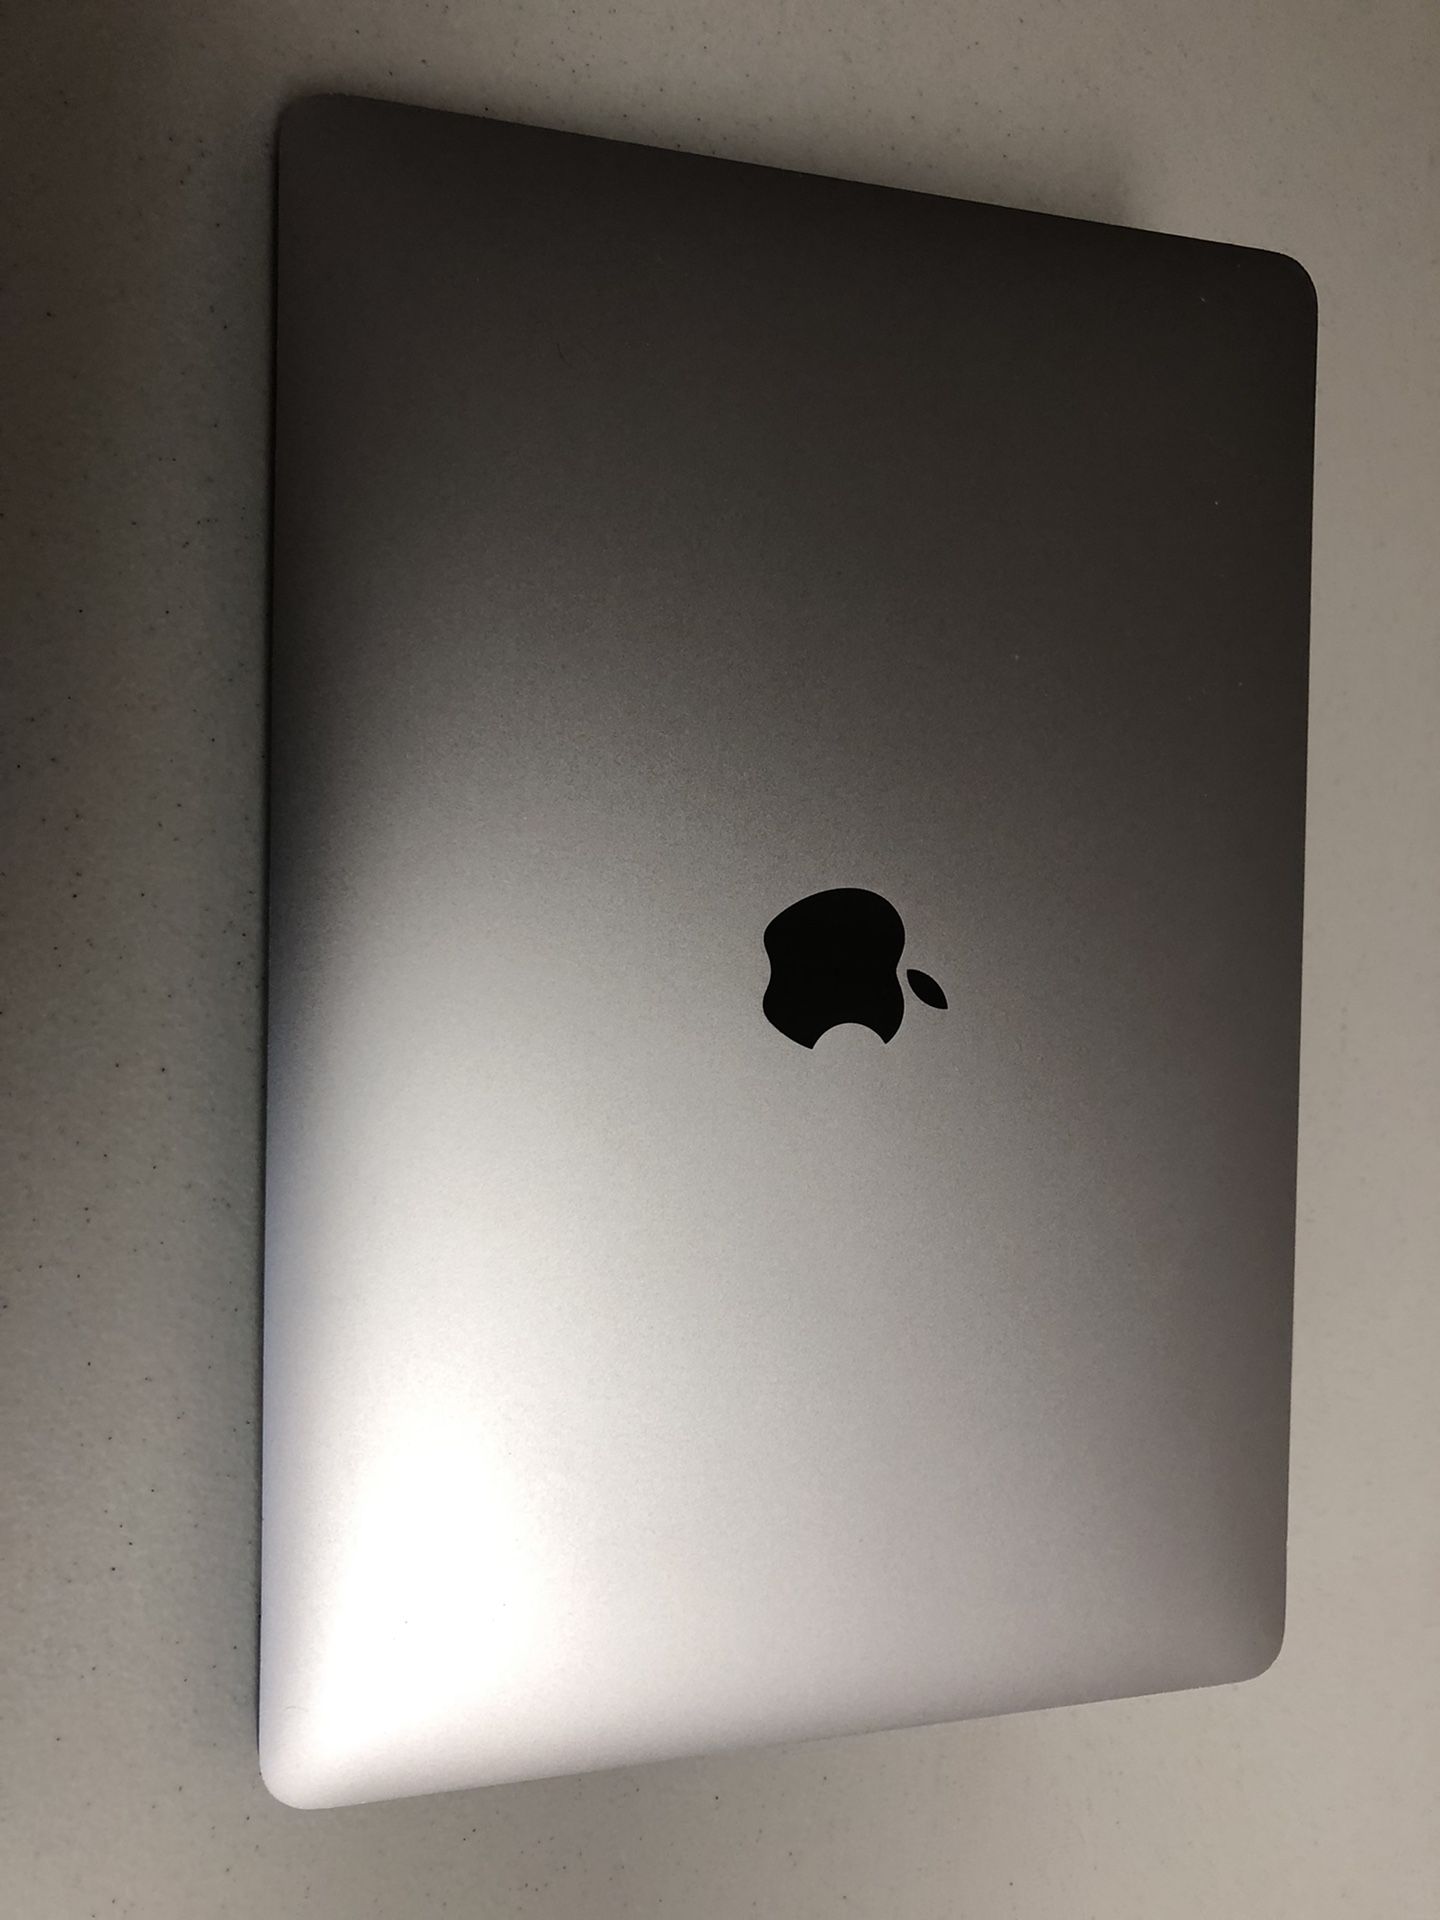 MacBook Pro 2019 With TouchBar 